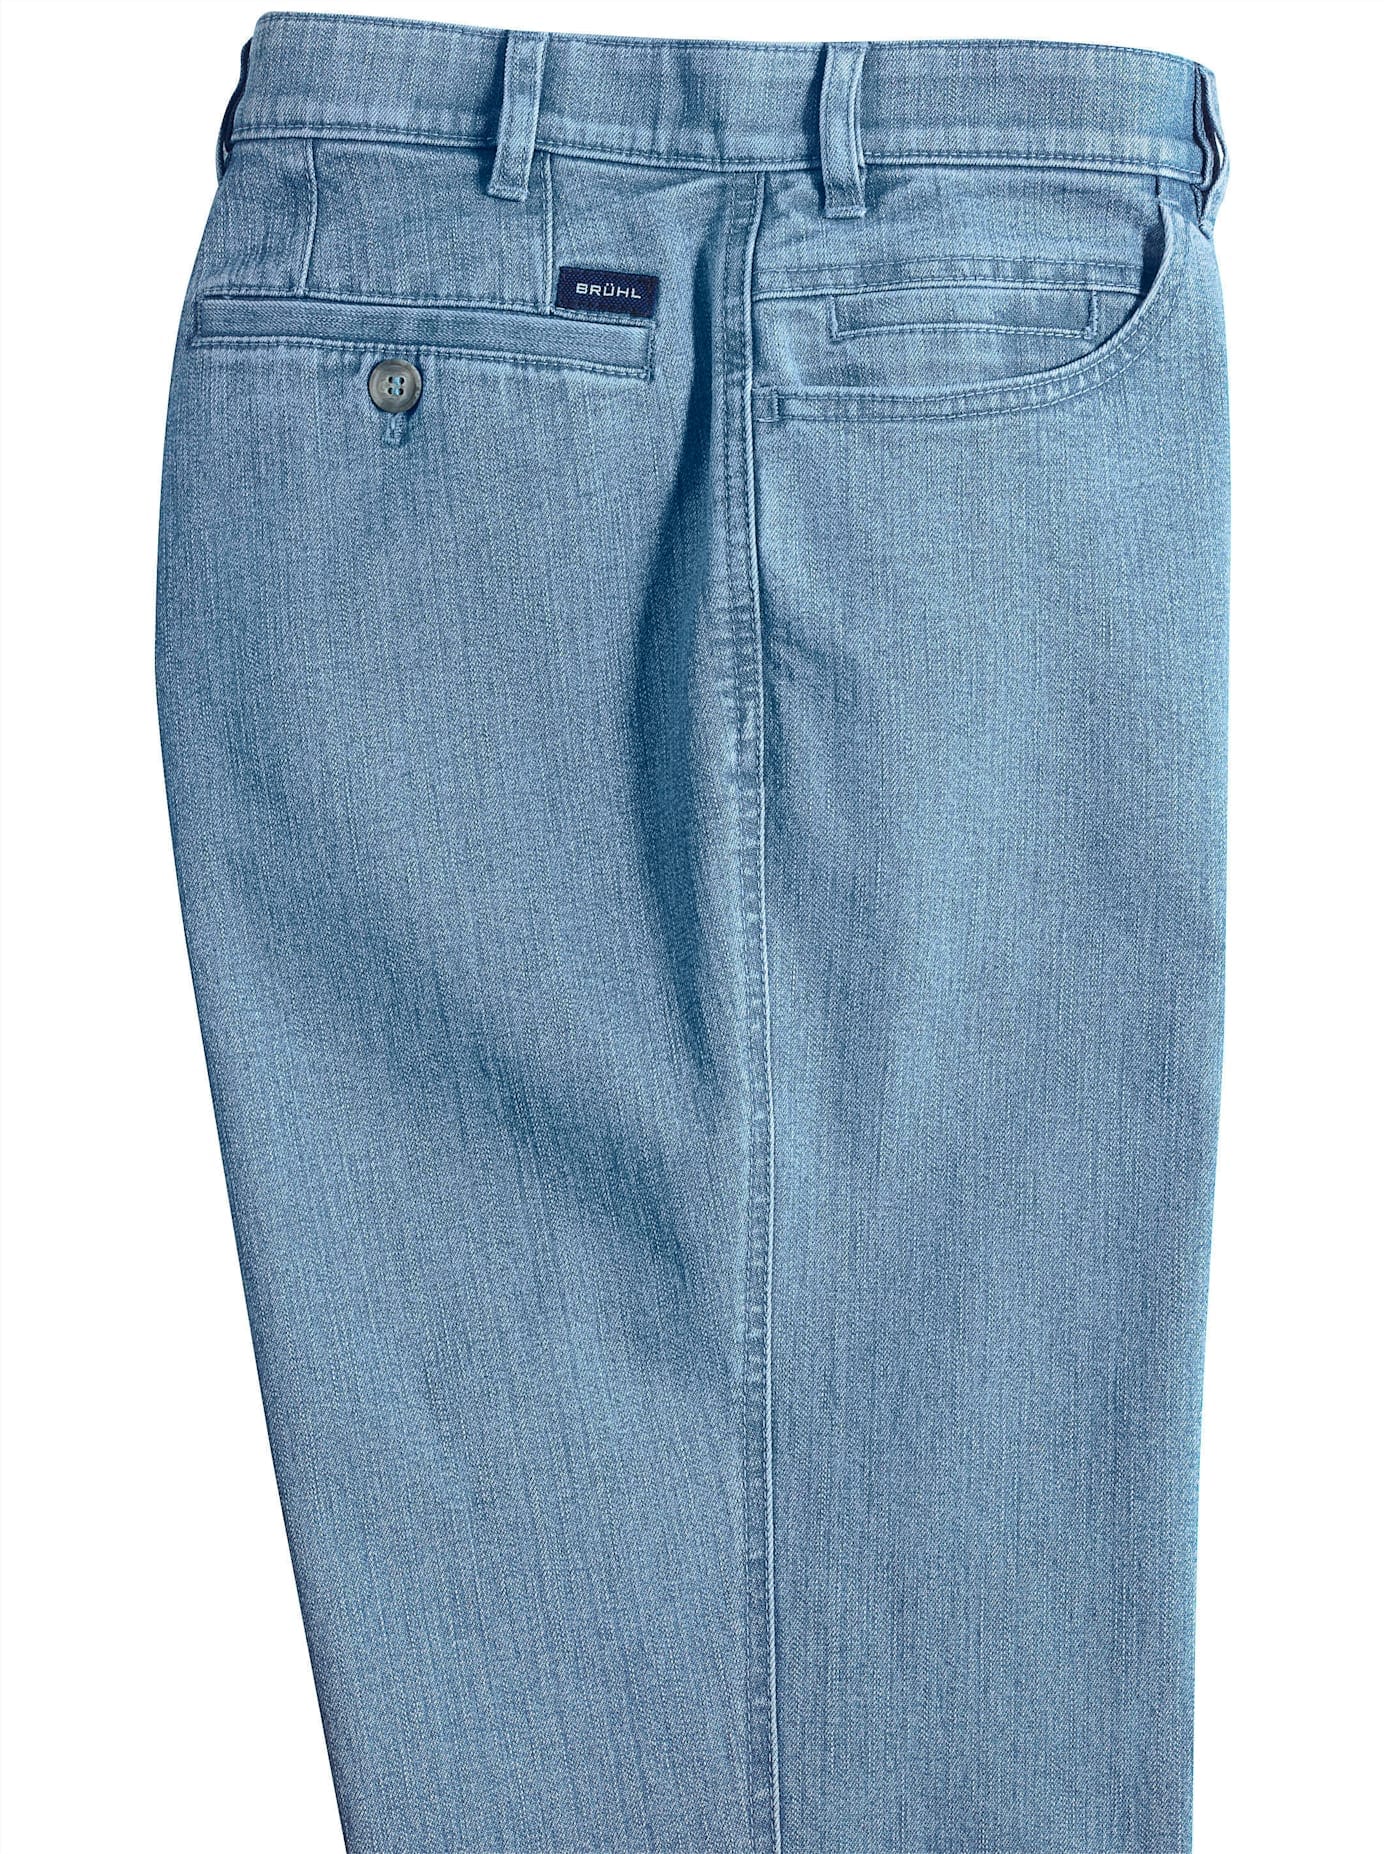 Dehnbund-Jeans, (1 tlg.)